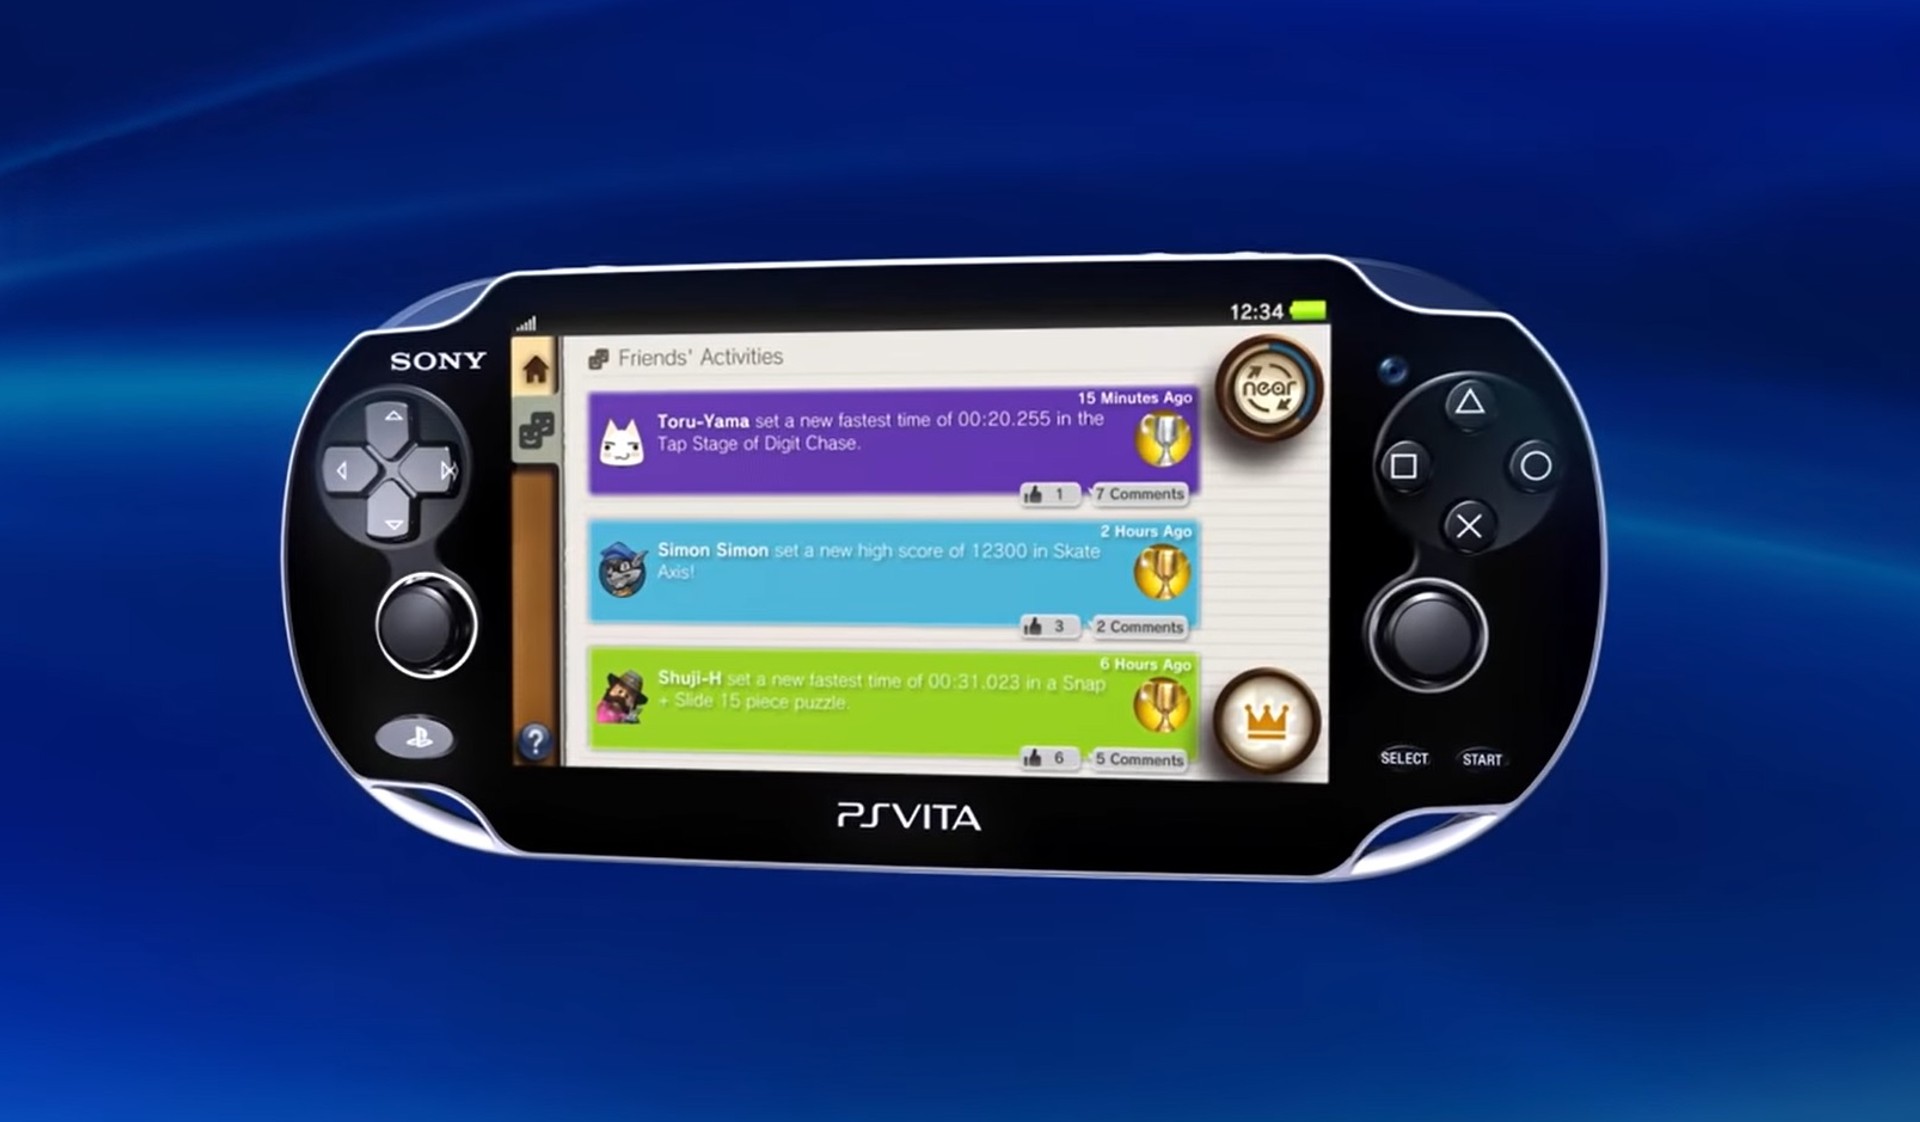 อดีตประธาน Sony เผย ถ้า Sony สนับสนุน PS Vita มากกว่านี้ เครื่องอาจไปได้ดีกว่านี้